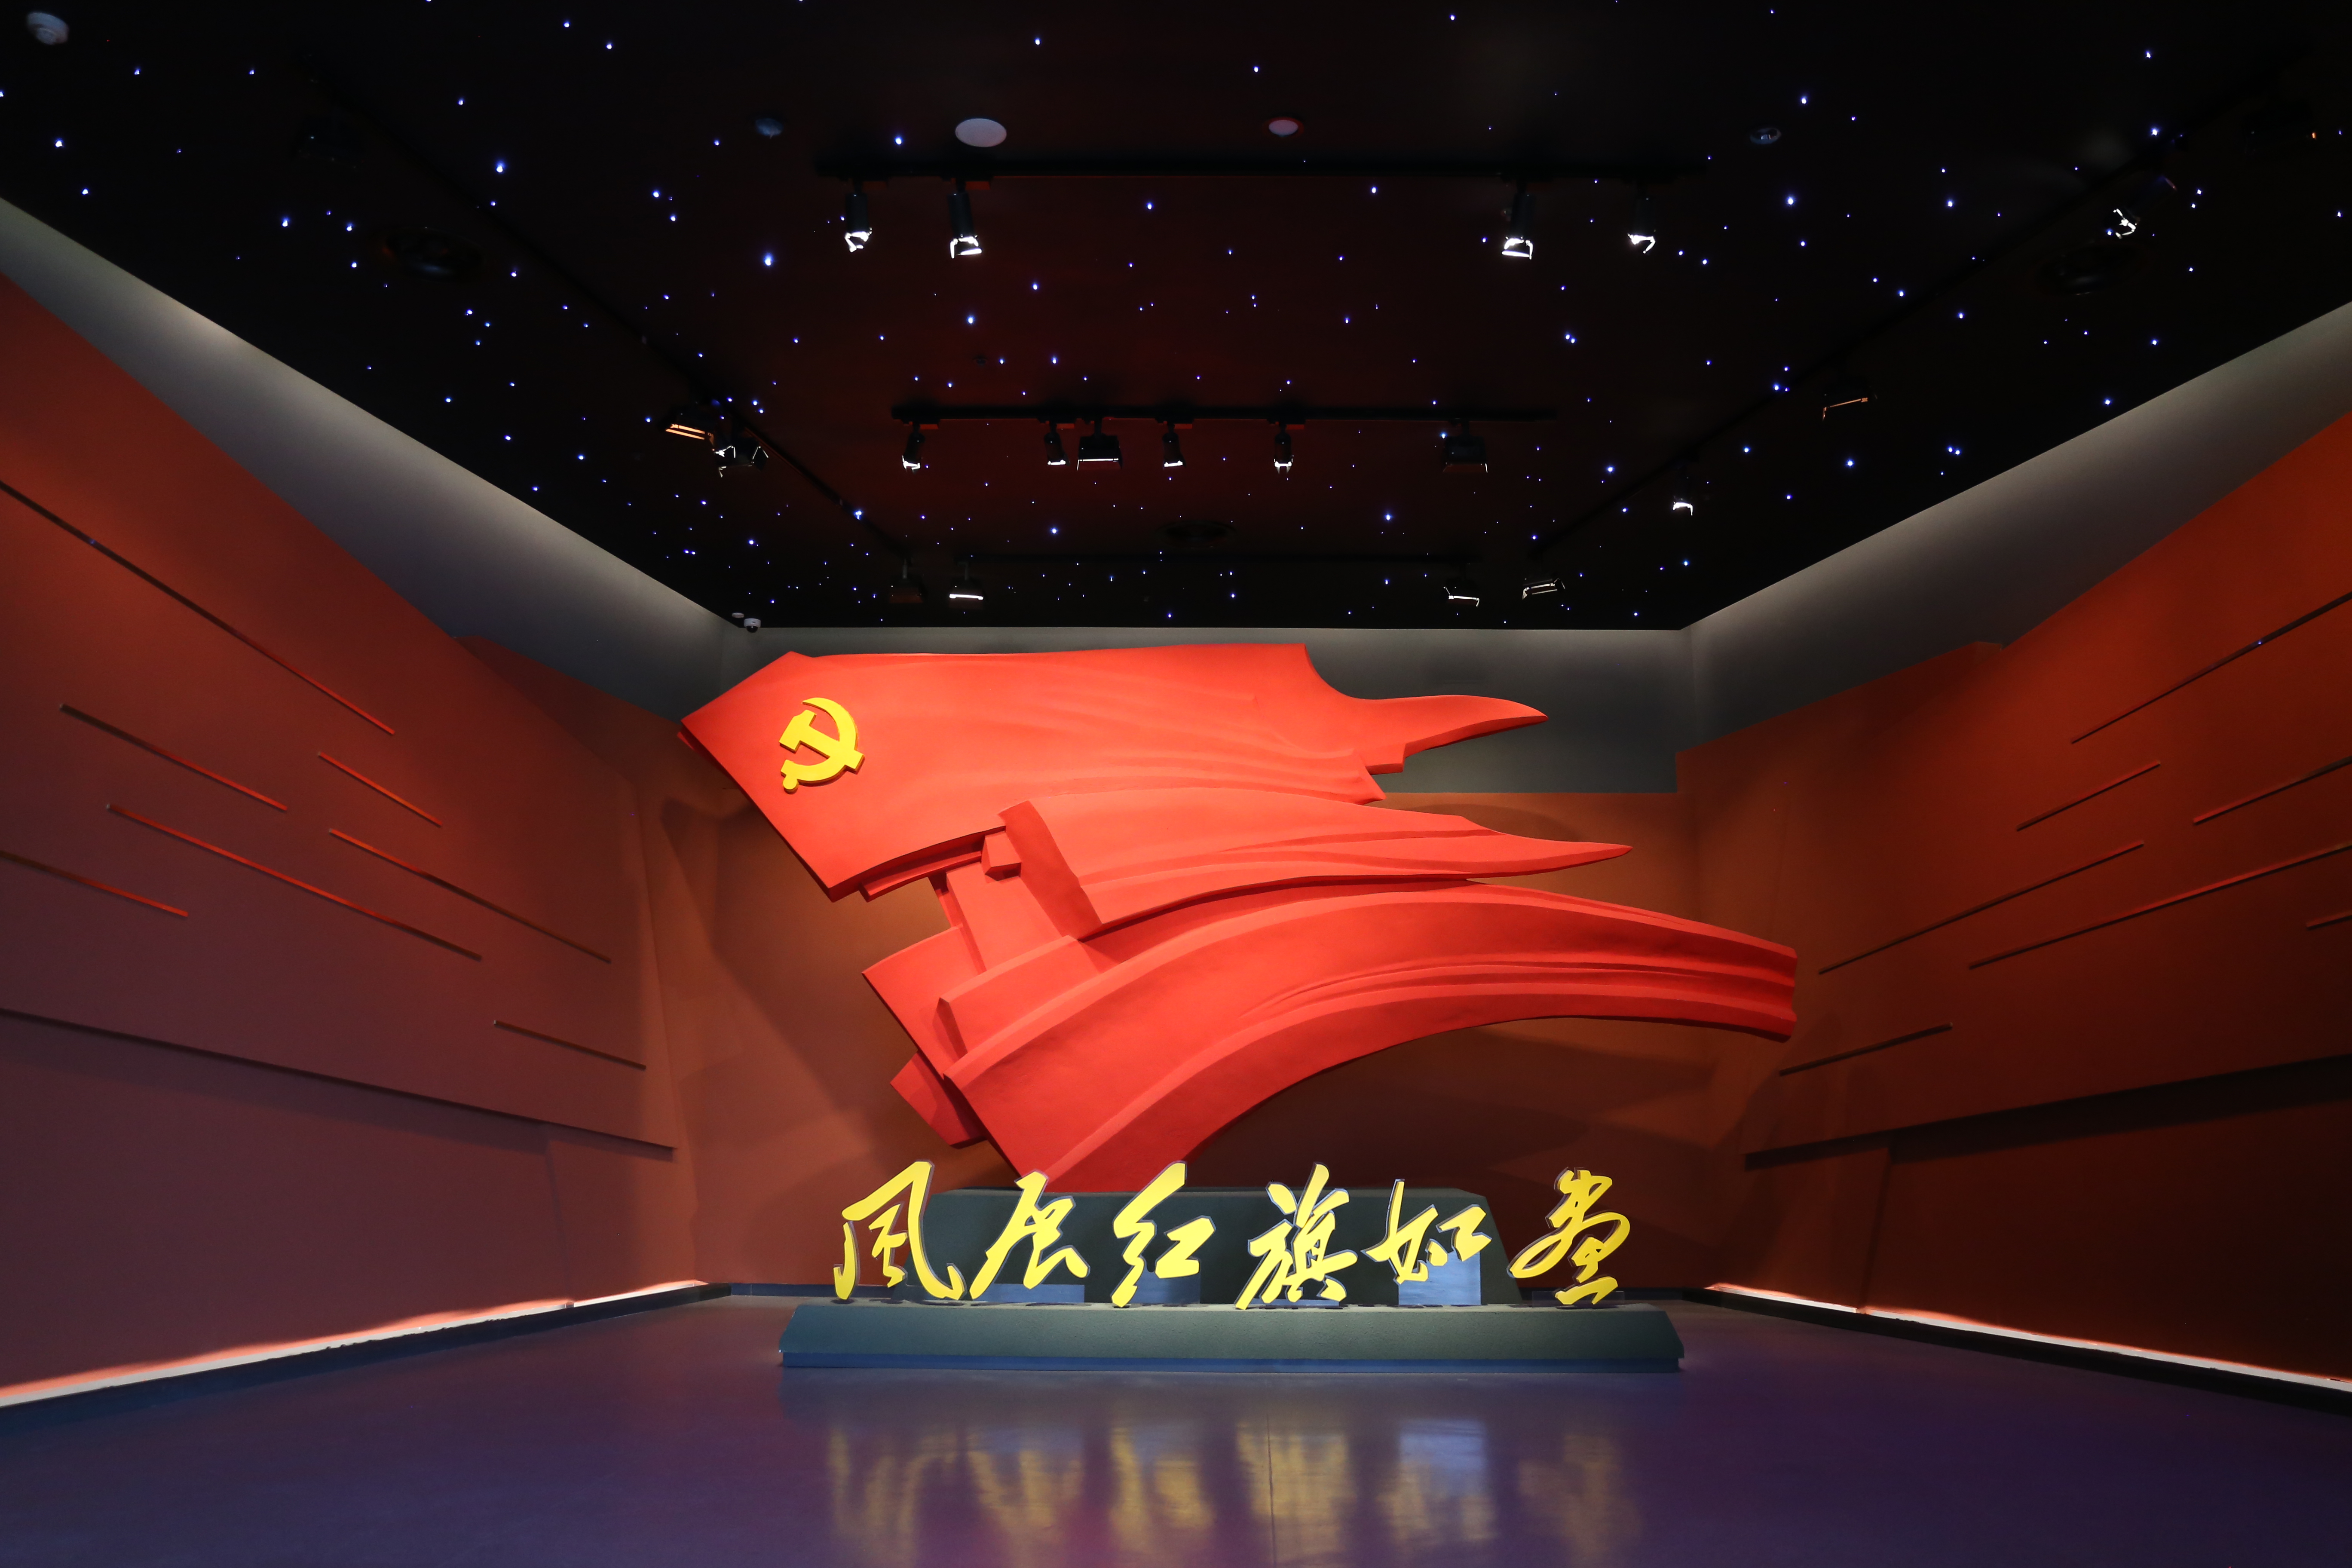 三明市中央苏区革命纪念馆“风展红旗如画”主题展览